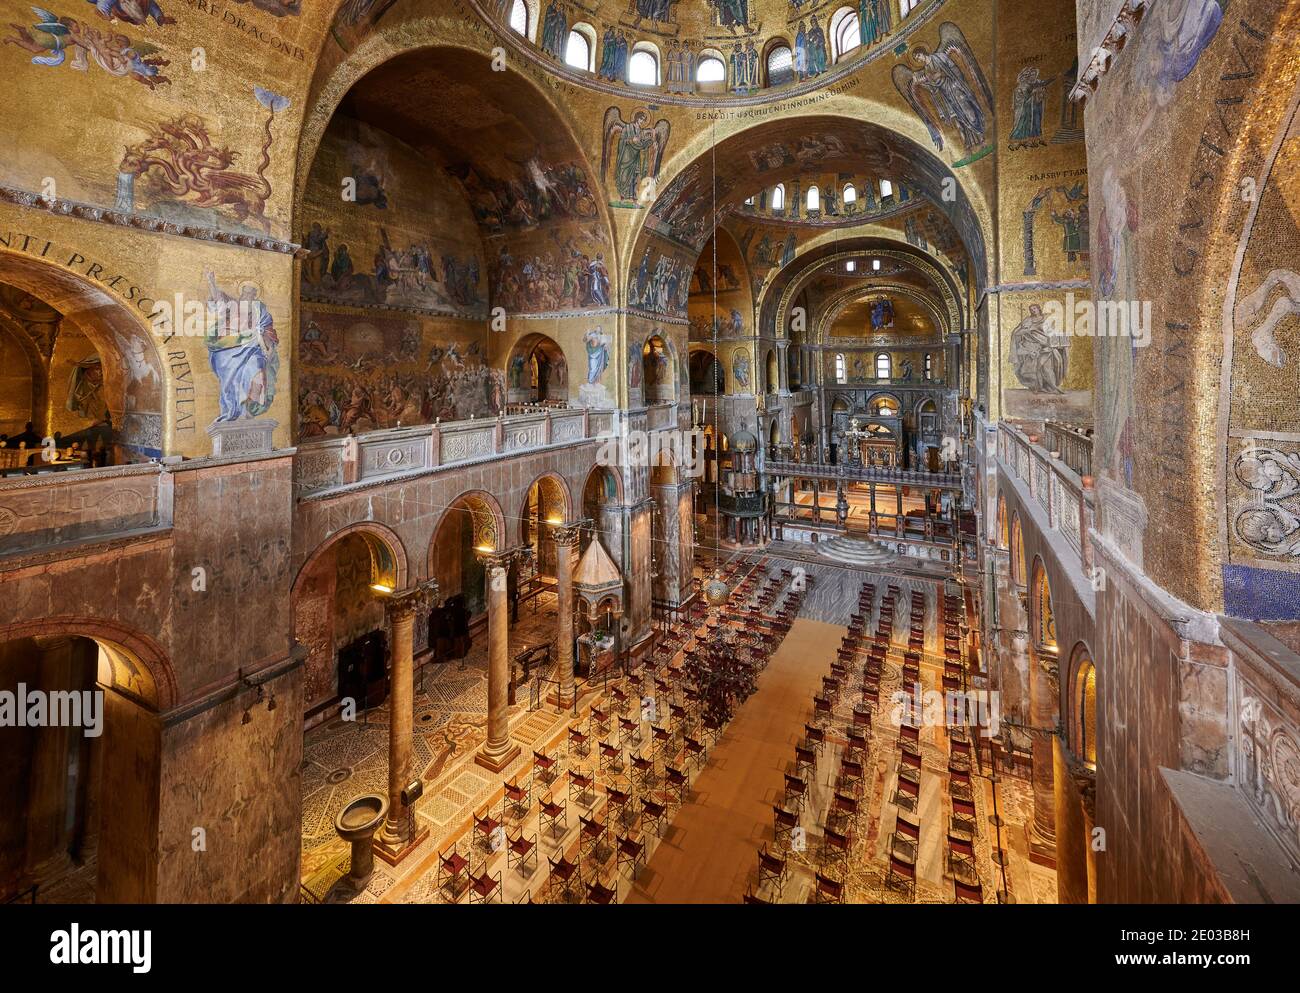 Splendidi mosaici dorati all'interno della Basilica di San Marco, interni dalla galleria sopra l'ingresso principale, Venezia, Veneto, Italia Foto Stock